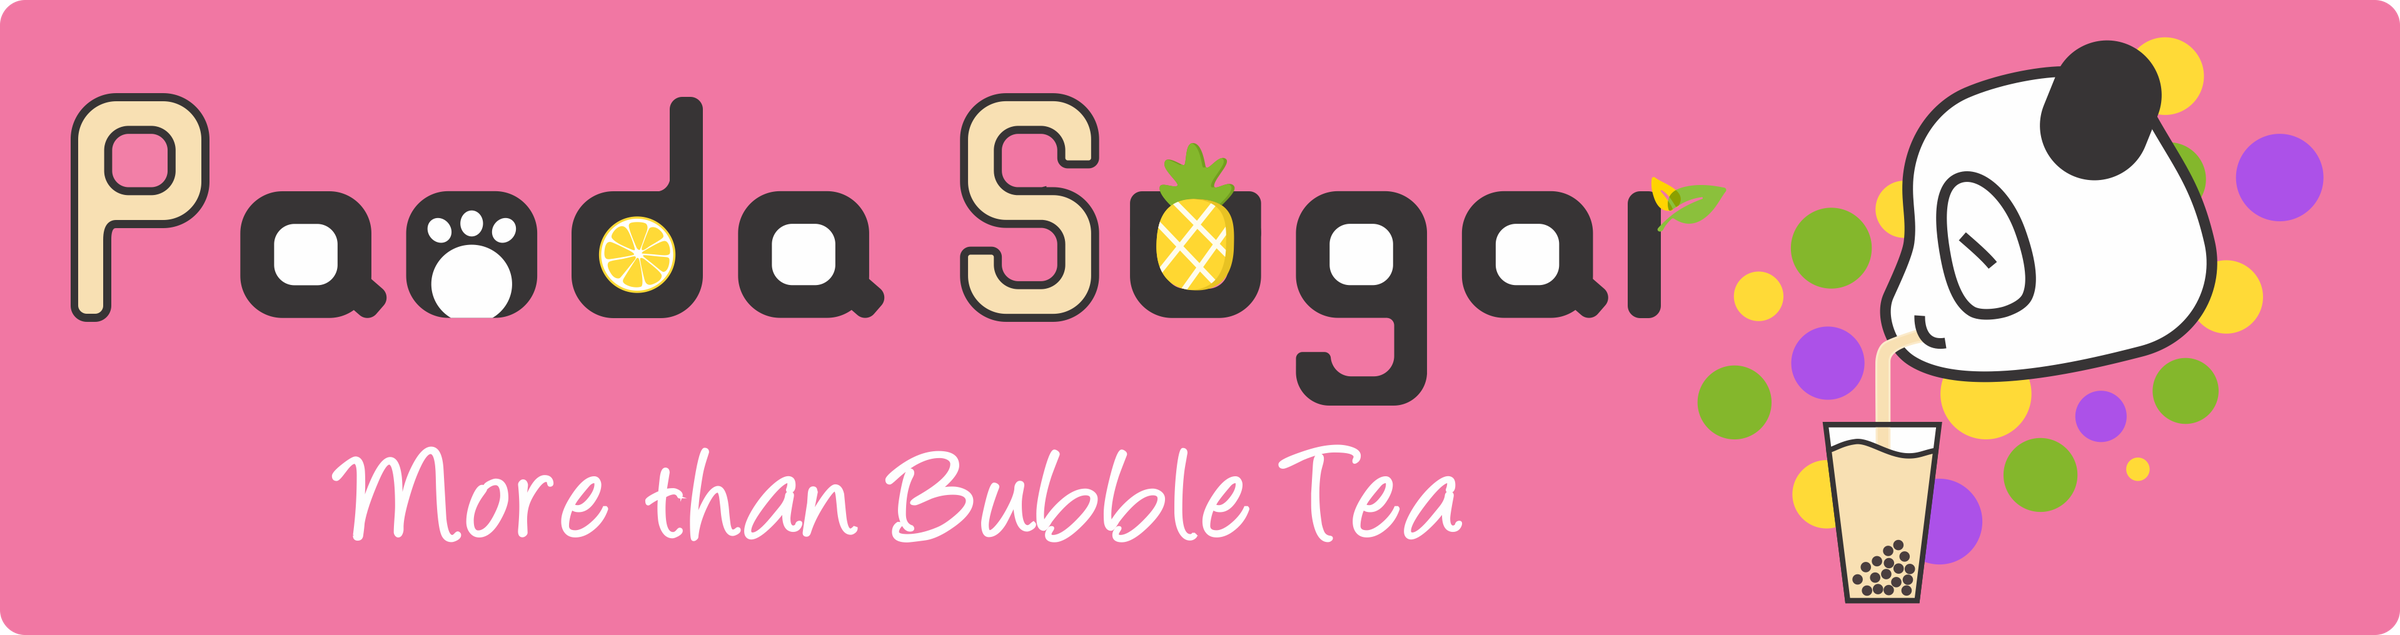 Panda Sugar Tea